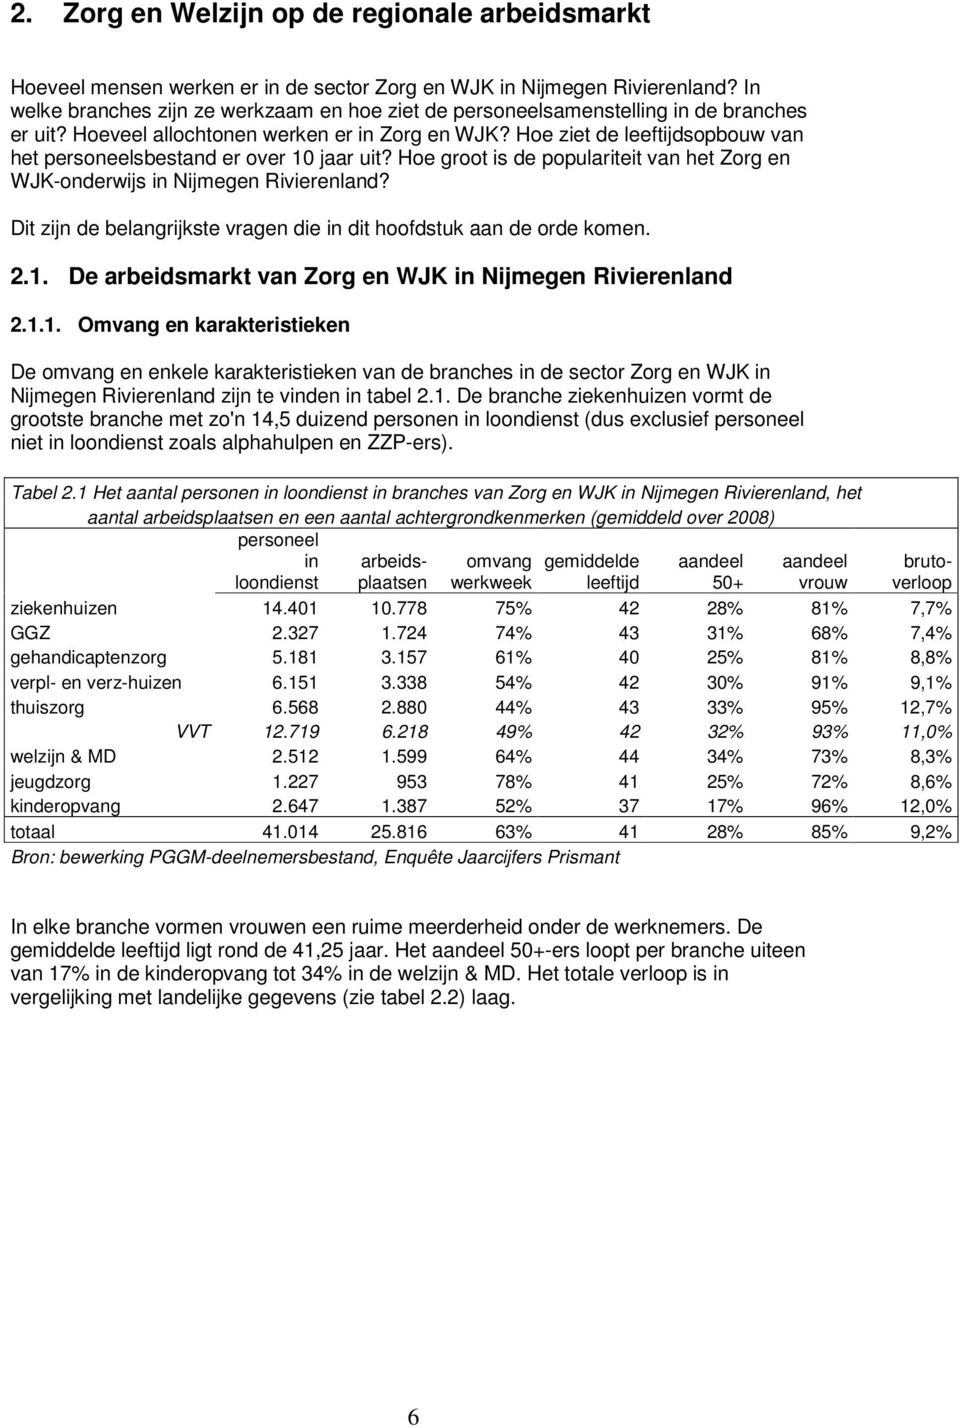 Hoe ziet de leeftijdsopbouw van het personeelsbestand er over 10 jaar uit? Hoe groot is de populariteit van het Zorg en WJK-onderwijs in Nijmegen Rivierenland?